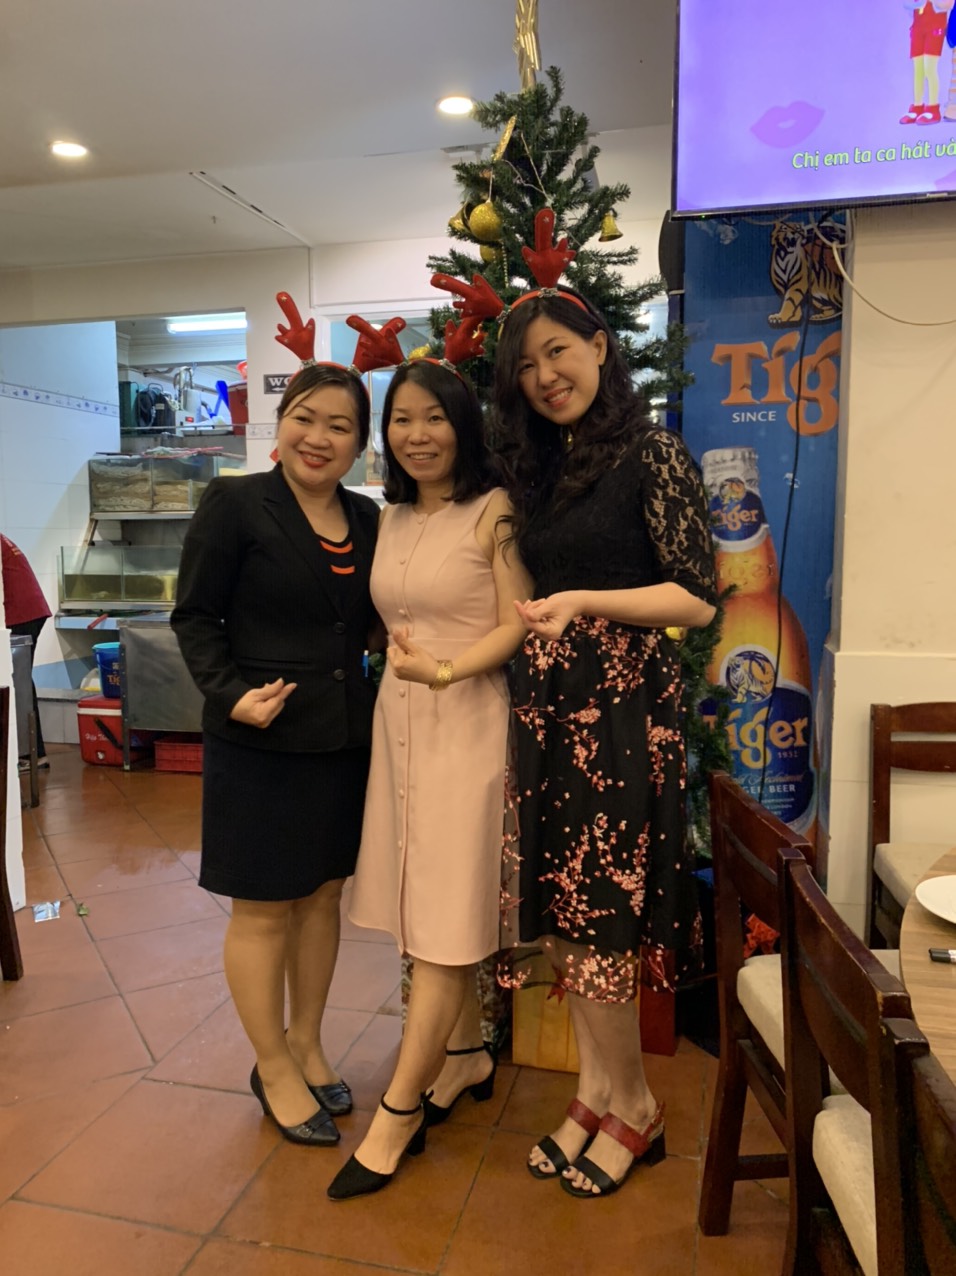 Noel năm 2019 khách đến đông đúc và nhận được quà từ ông già Noel đây - Haihoangbinhtan.com 12